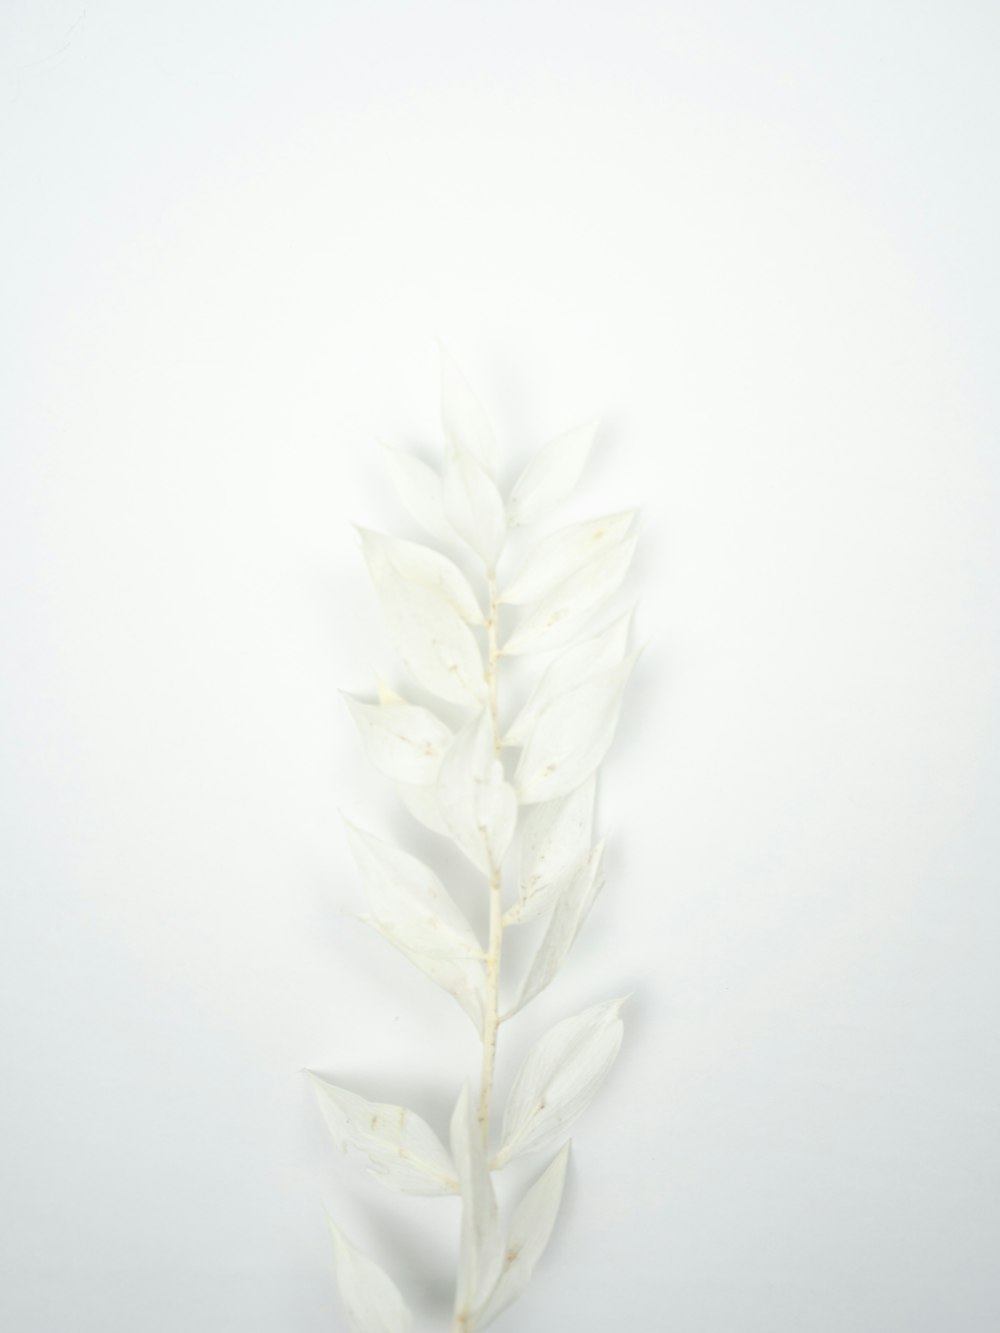 plante blanche et verte sur surface blanche